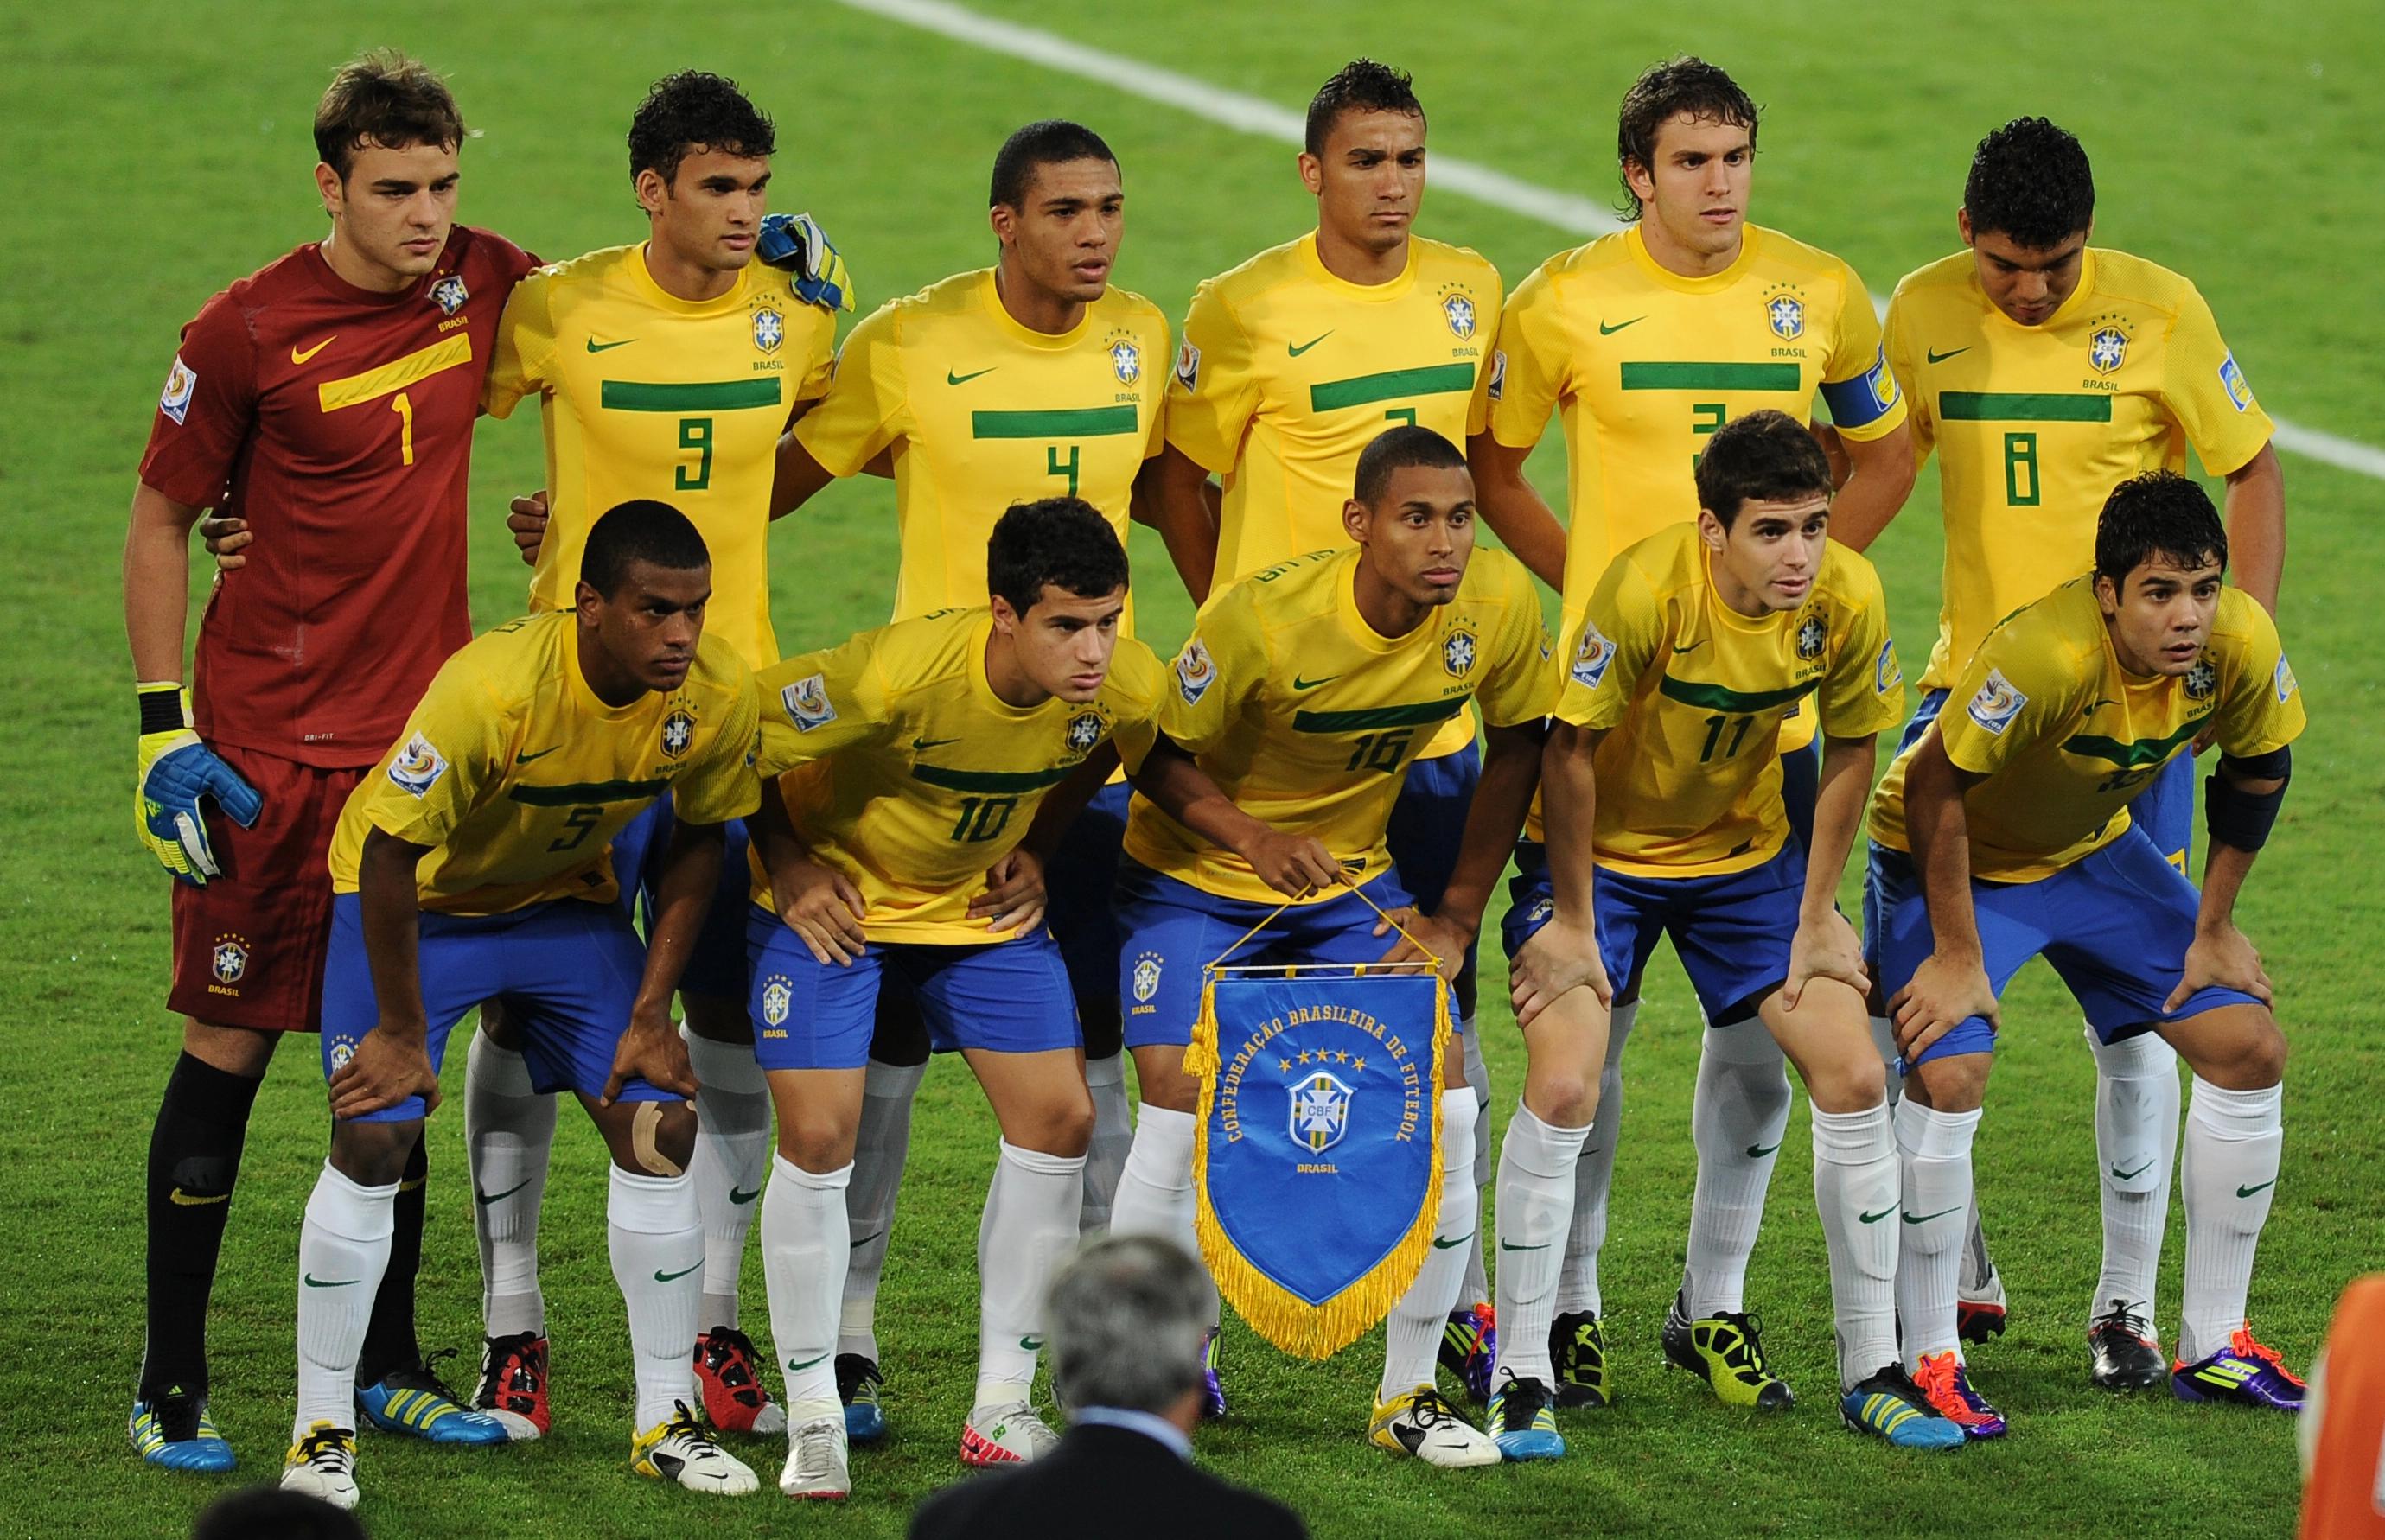 巴西世界杯竞彩,世界杯比赛,球队能力,世界杯进程,球队阵容